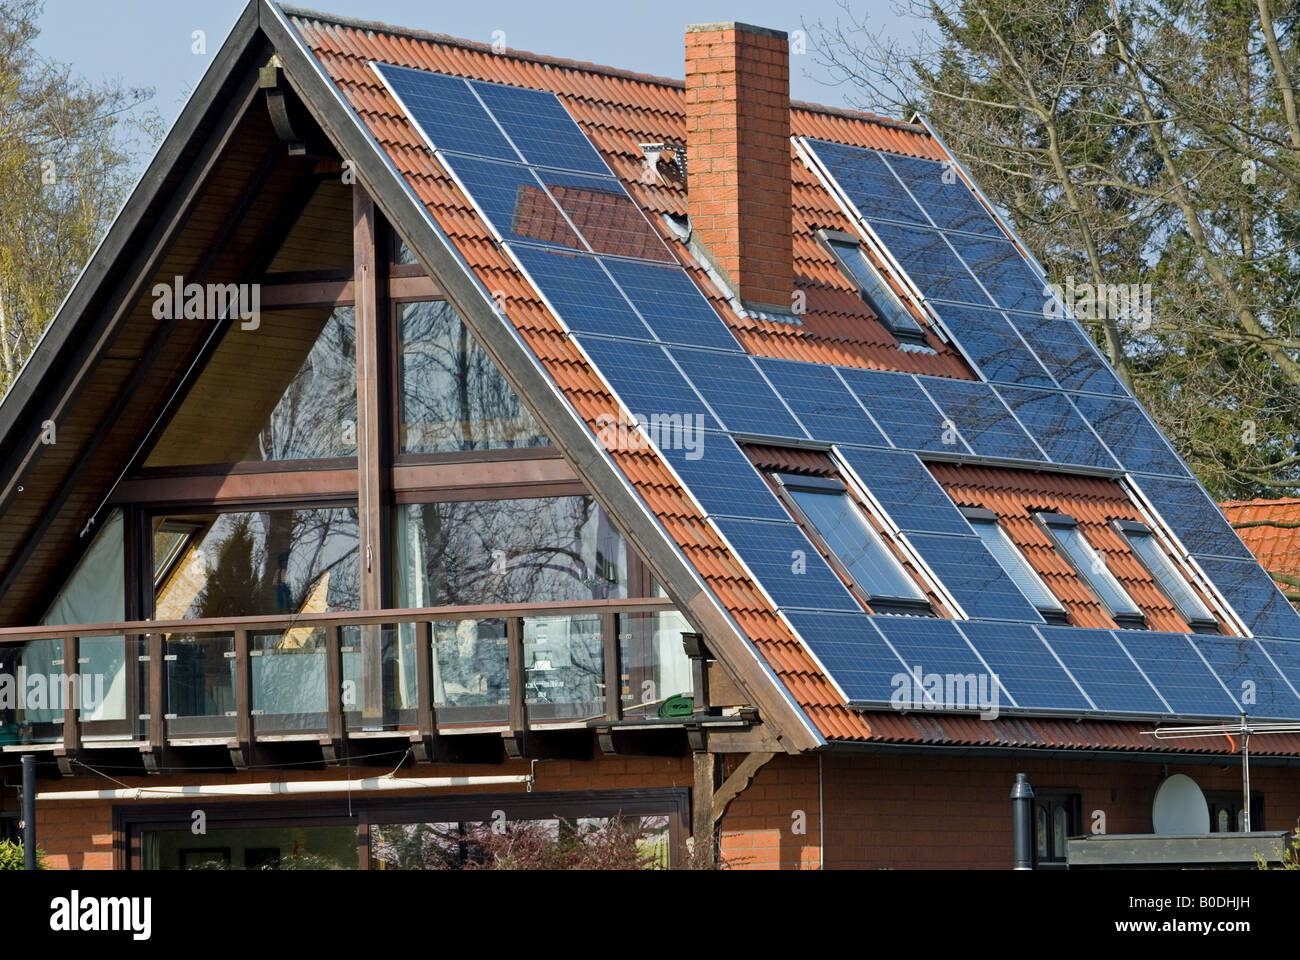 Solar-Panels auf eine Wohnimmobilie in Hude bin Dummer, Niedersachsen, Deutschland. Stockfoto